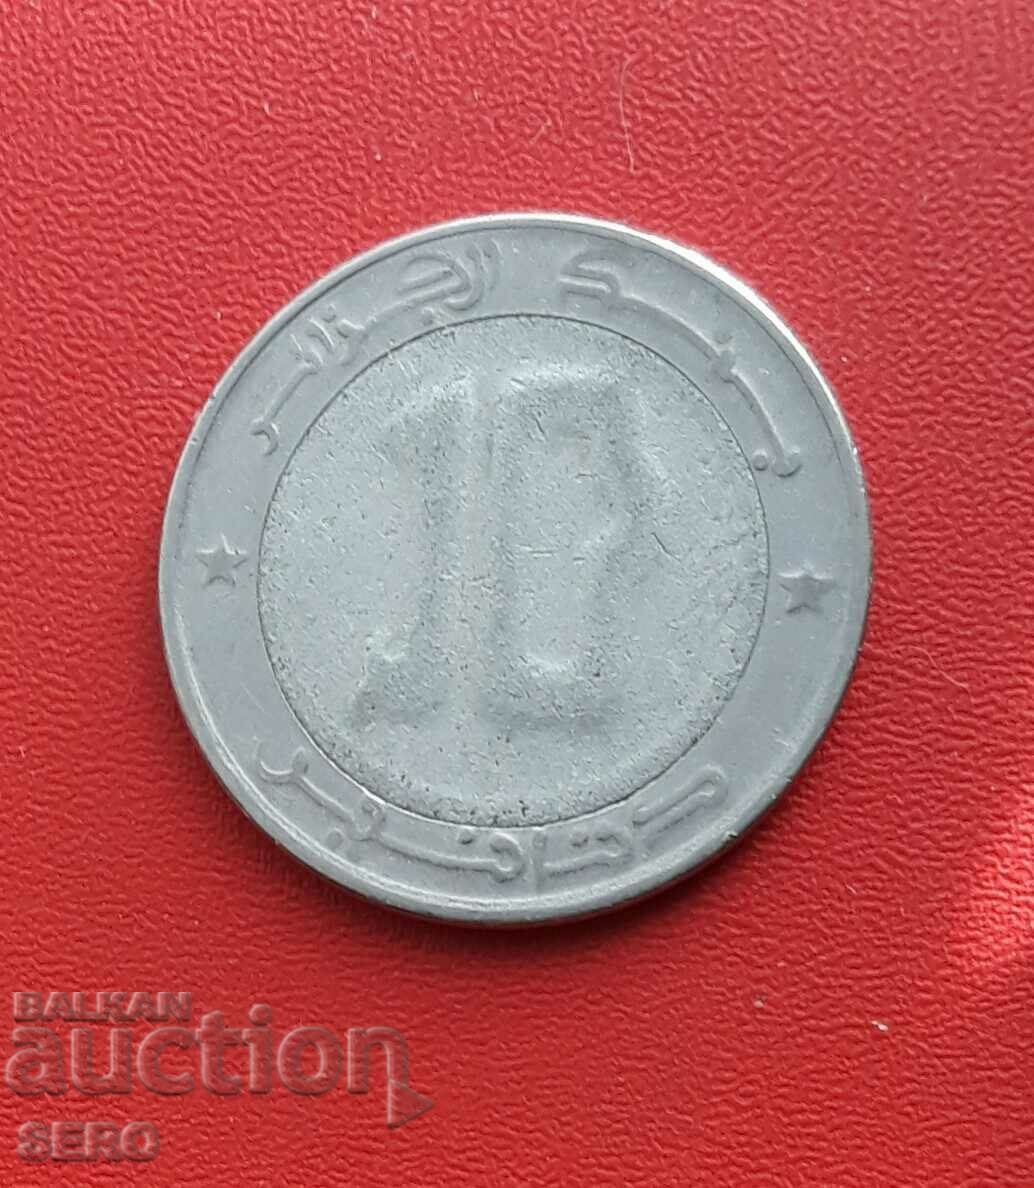 Algeria - 10 dinari 1992